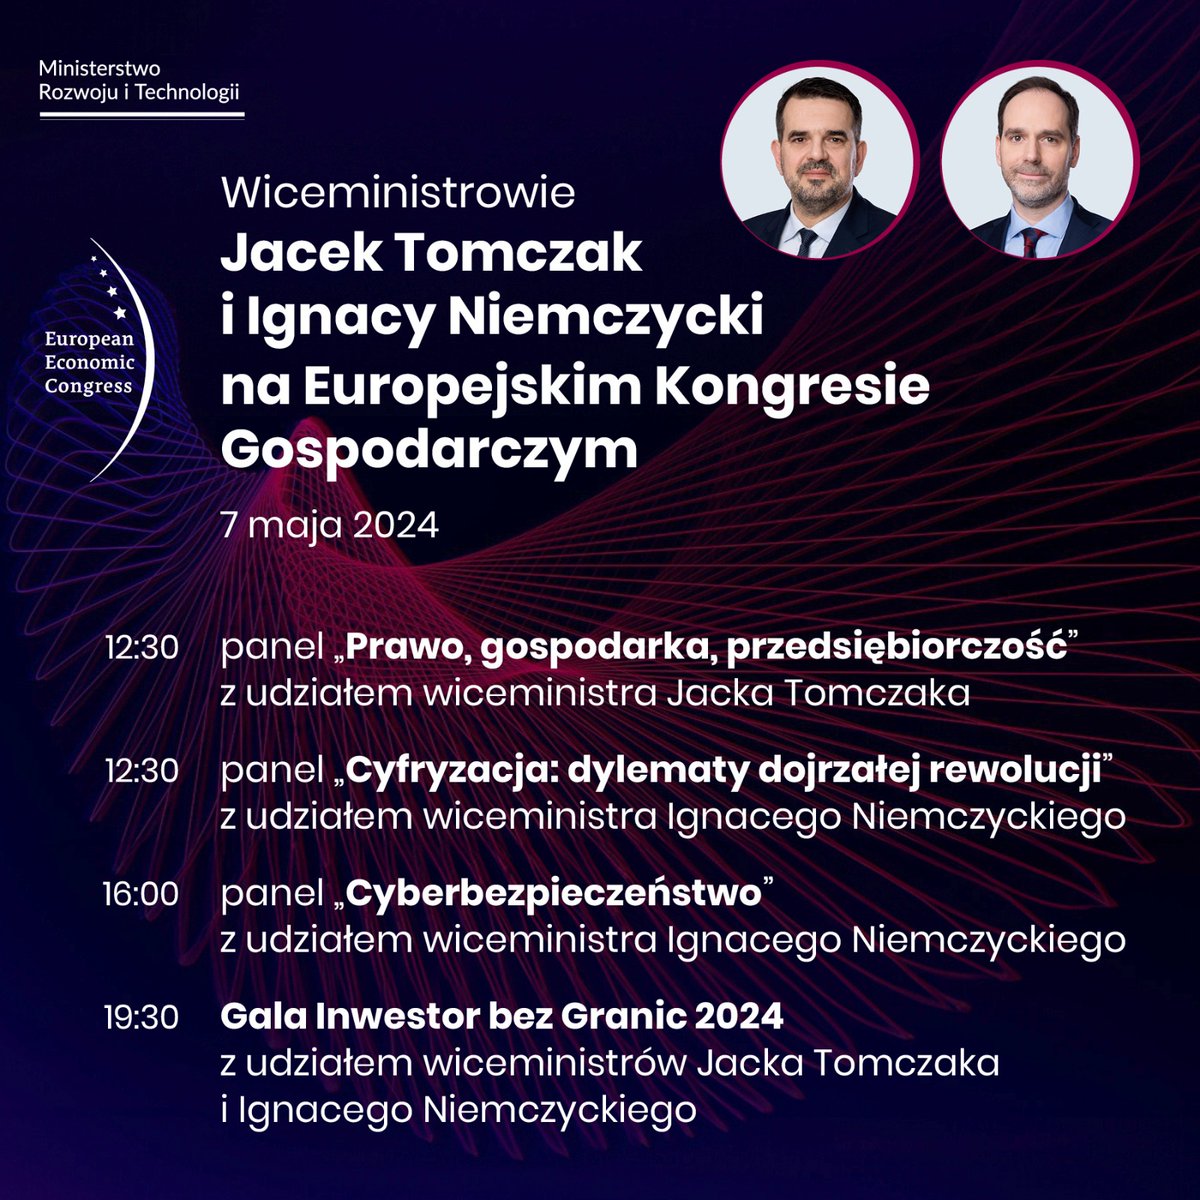 📣W #Katowice rozpoczyna się dziś Europejski Kongres Gospodarczy @EECKatowice. Zapraszamy na wydarzenia z udziałem wiceministrów rozwoju i technologii Jacka Tomczaka i @ignacyn Poznaj szczegóły ⤵️